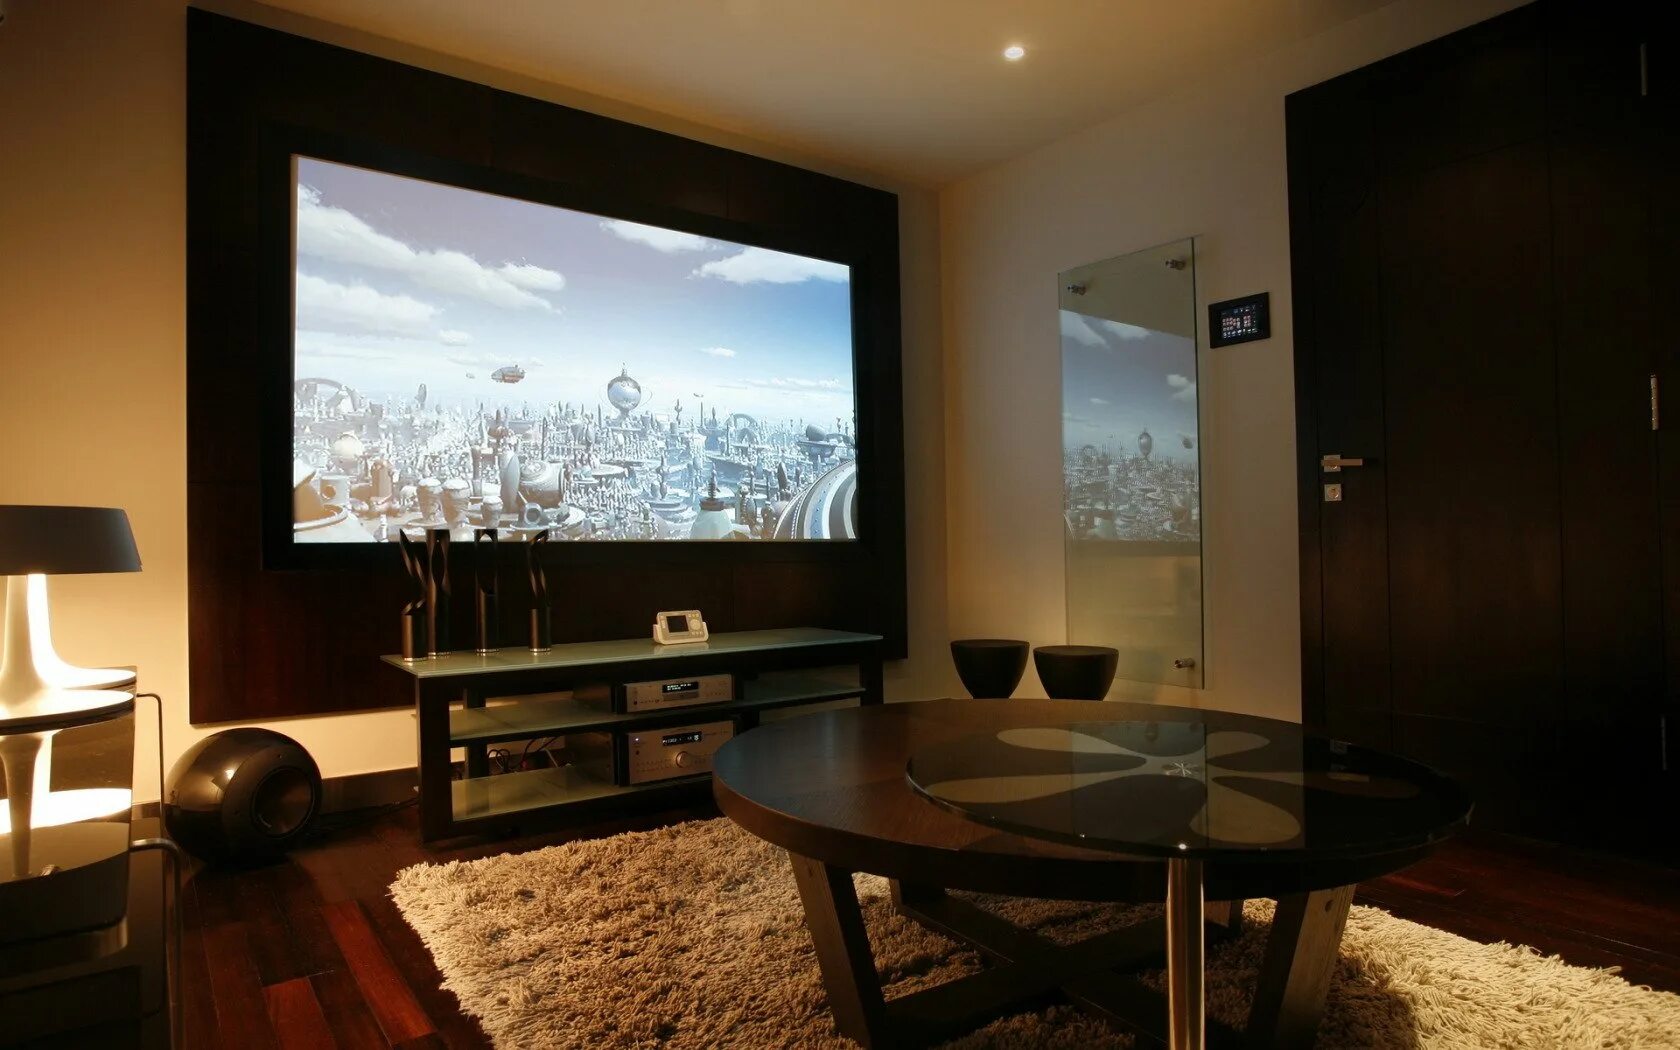 Комната с телевизором. Комната с большим телевизором. Телевизор на стене. Большой телевизор на стене. Огромный телевизор на стене.